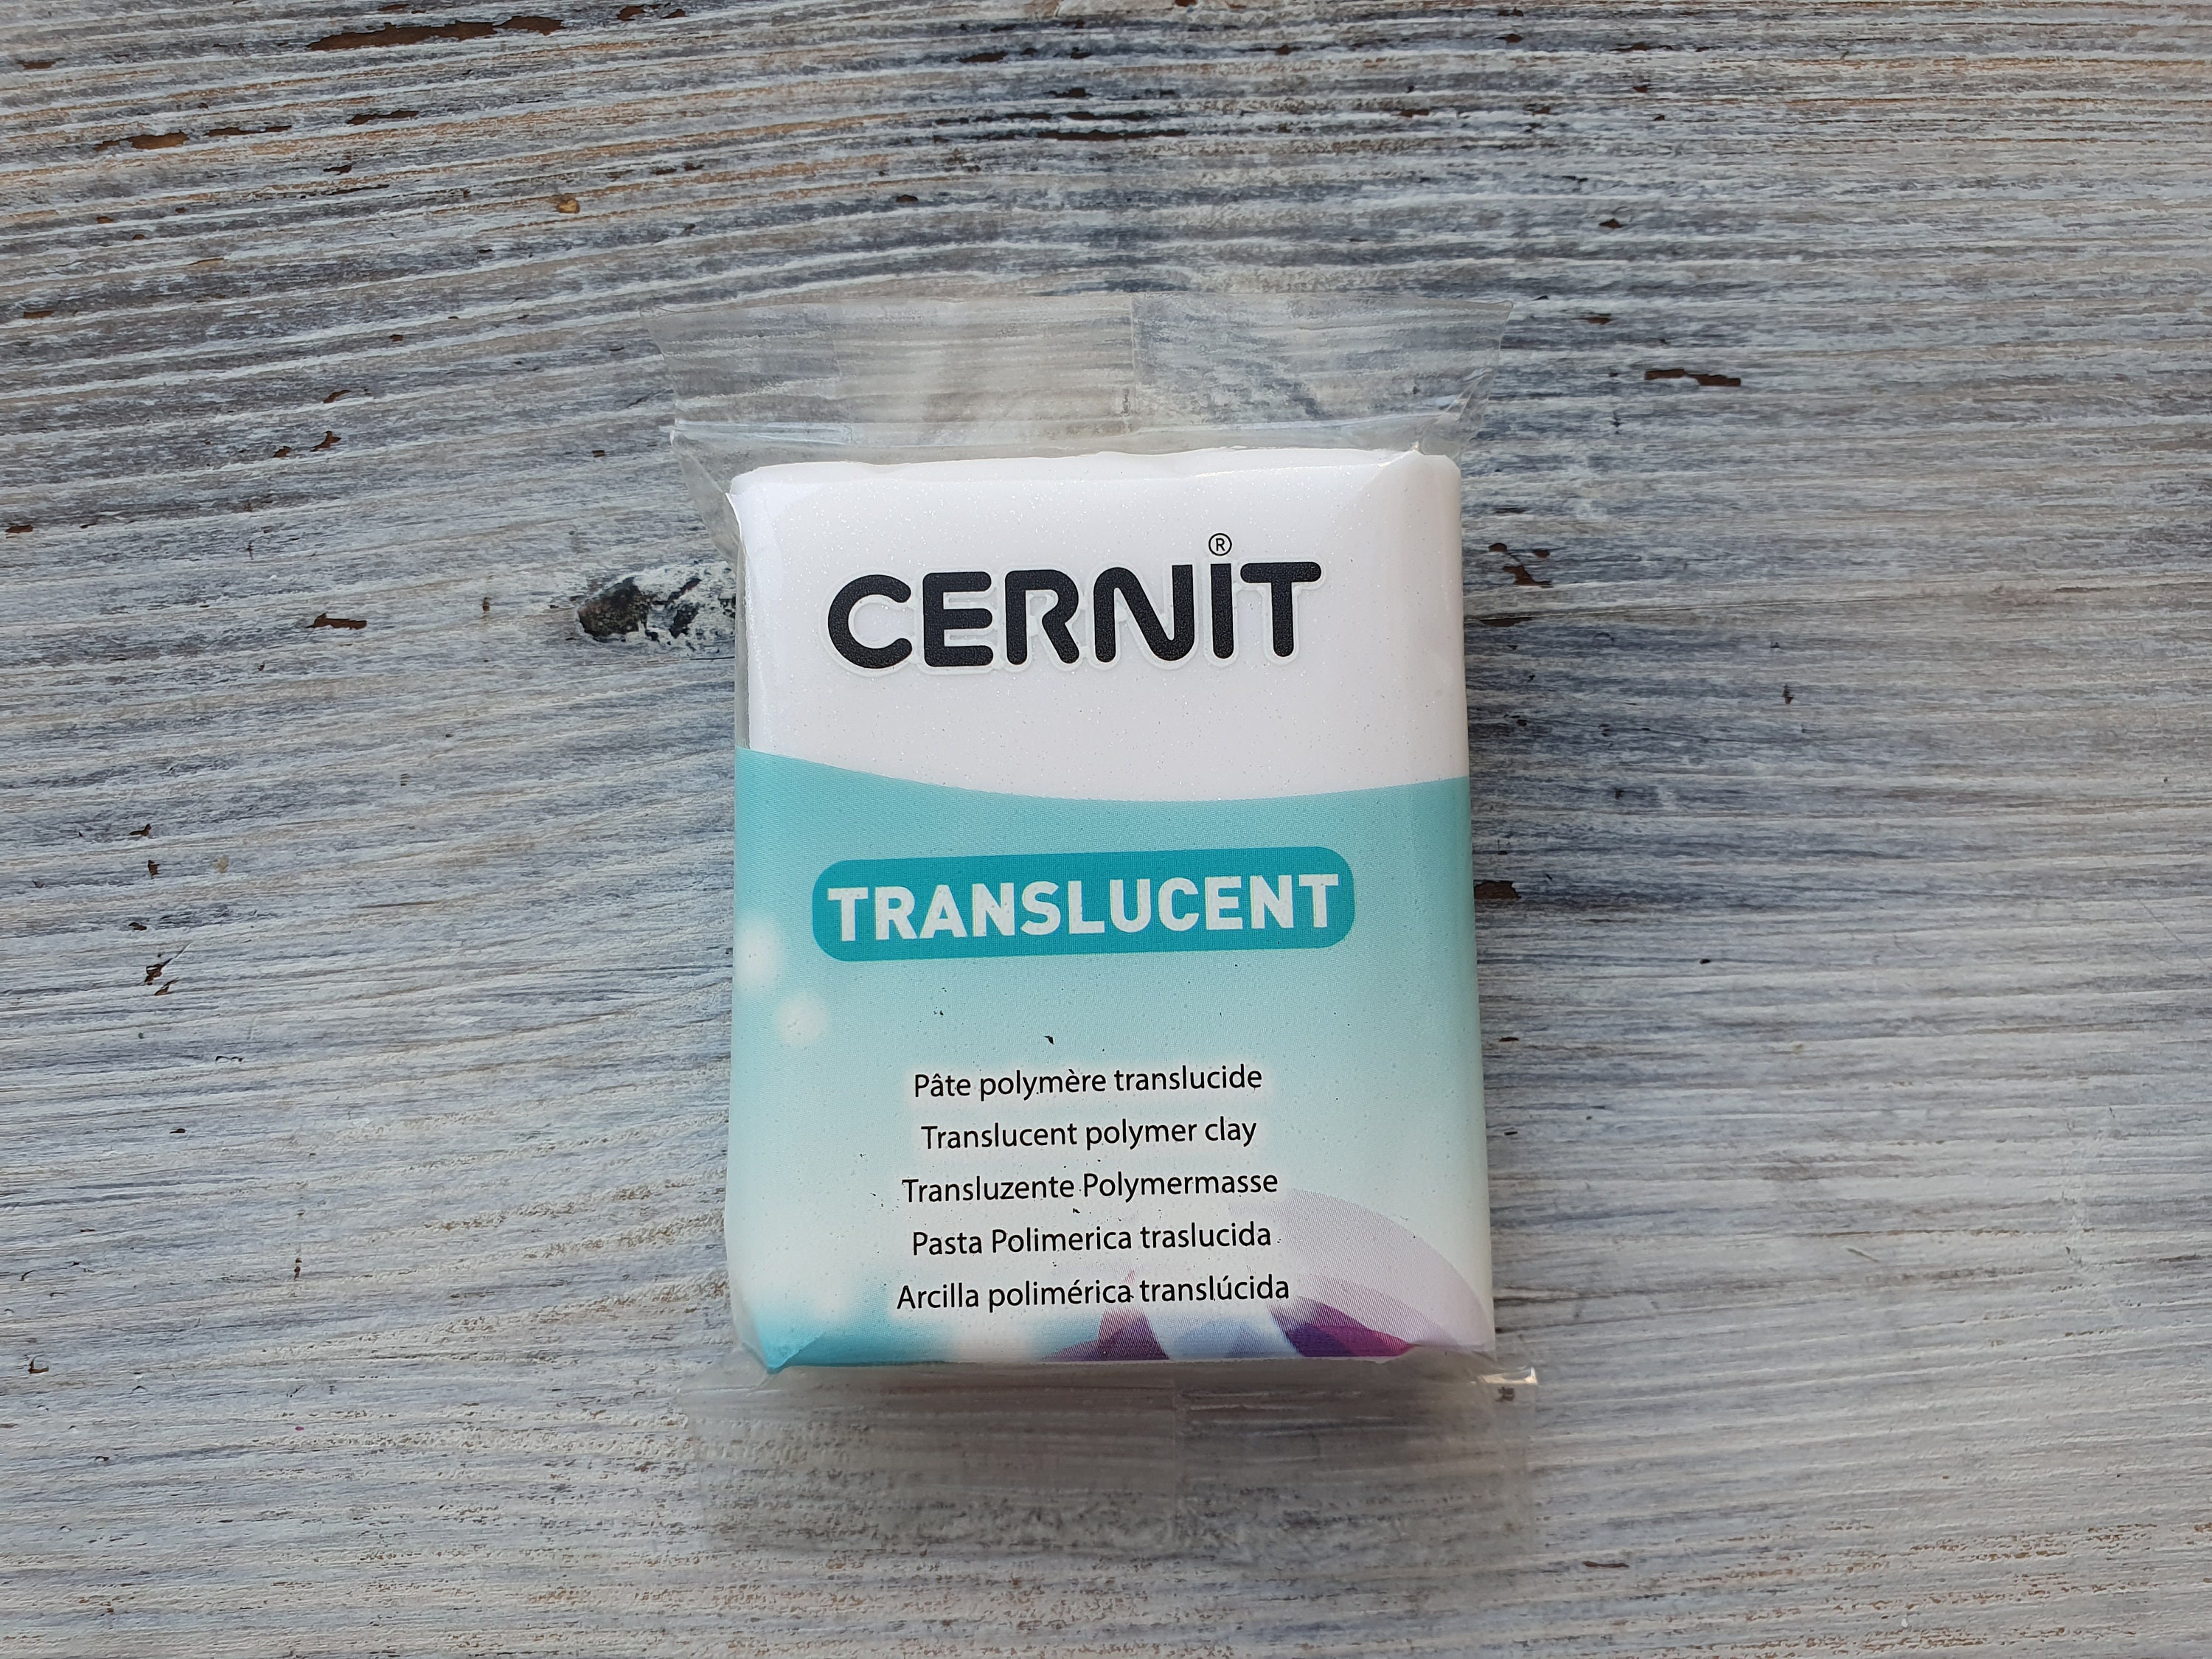 Cernit Translucent 56g - Violet – Blackbird and Violet